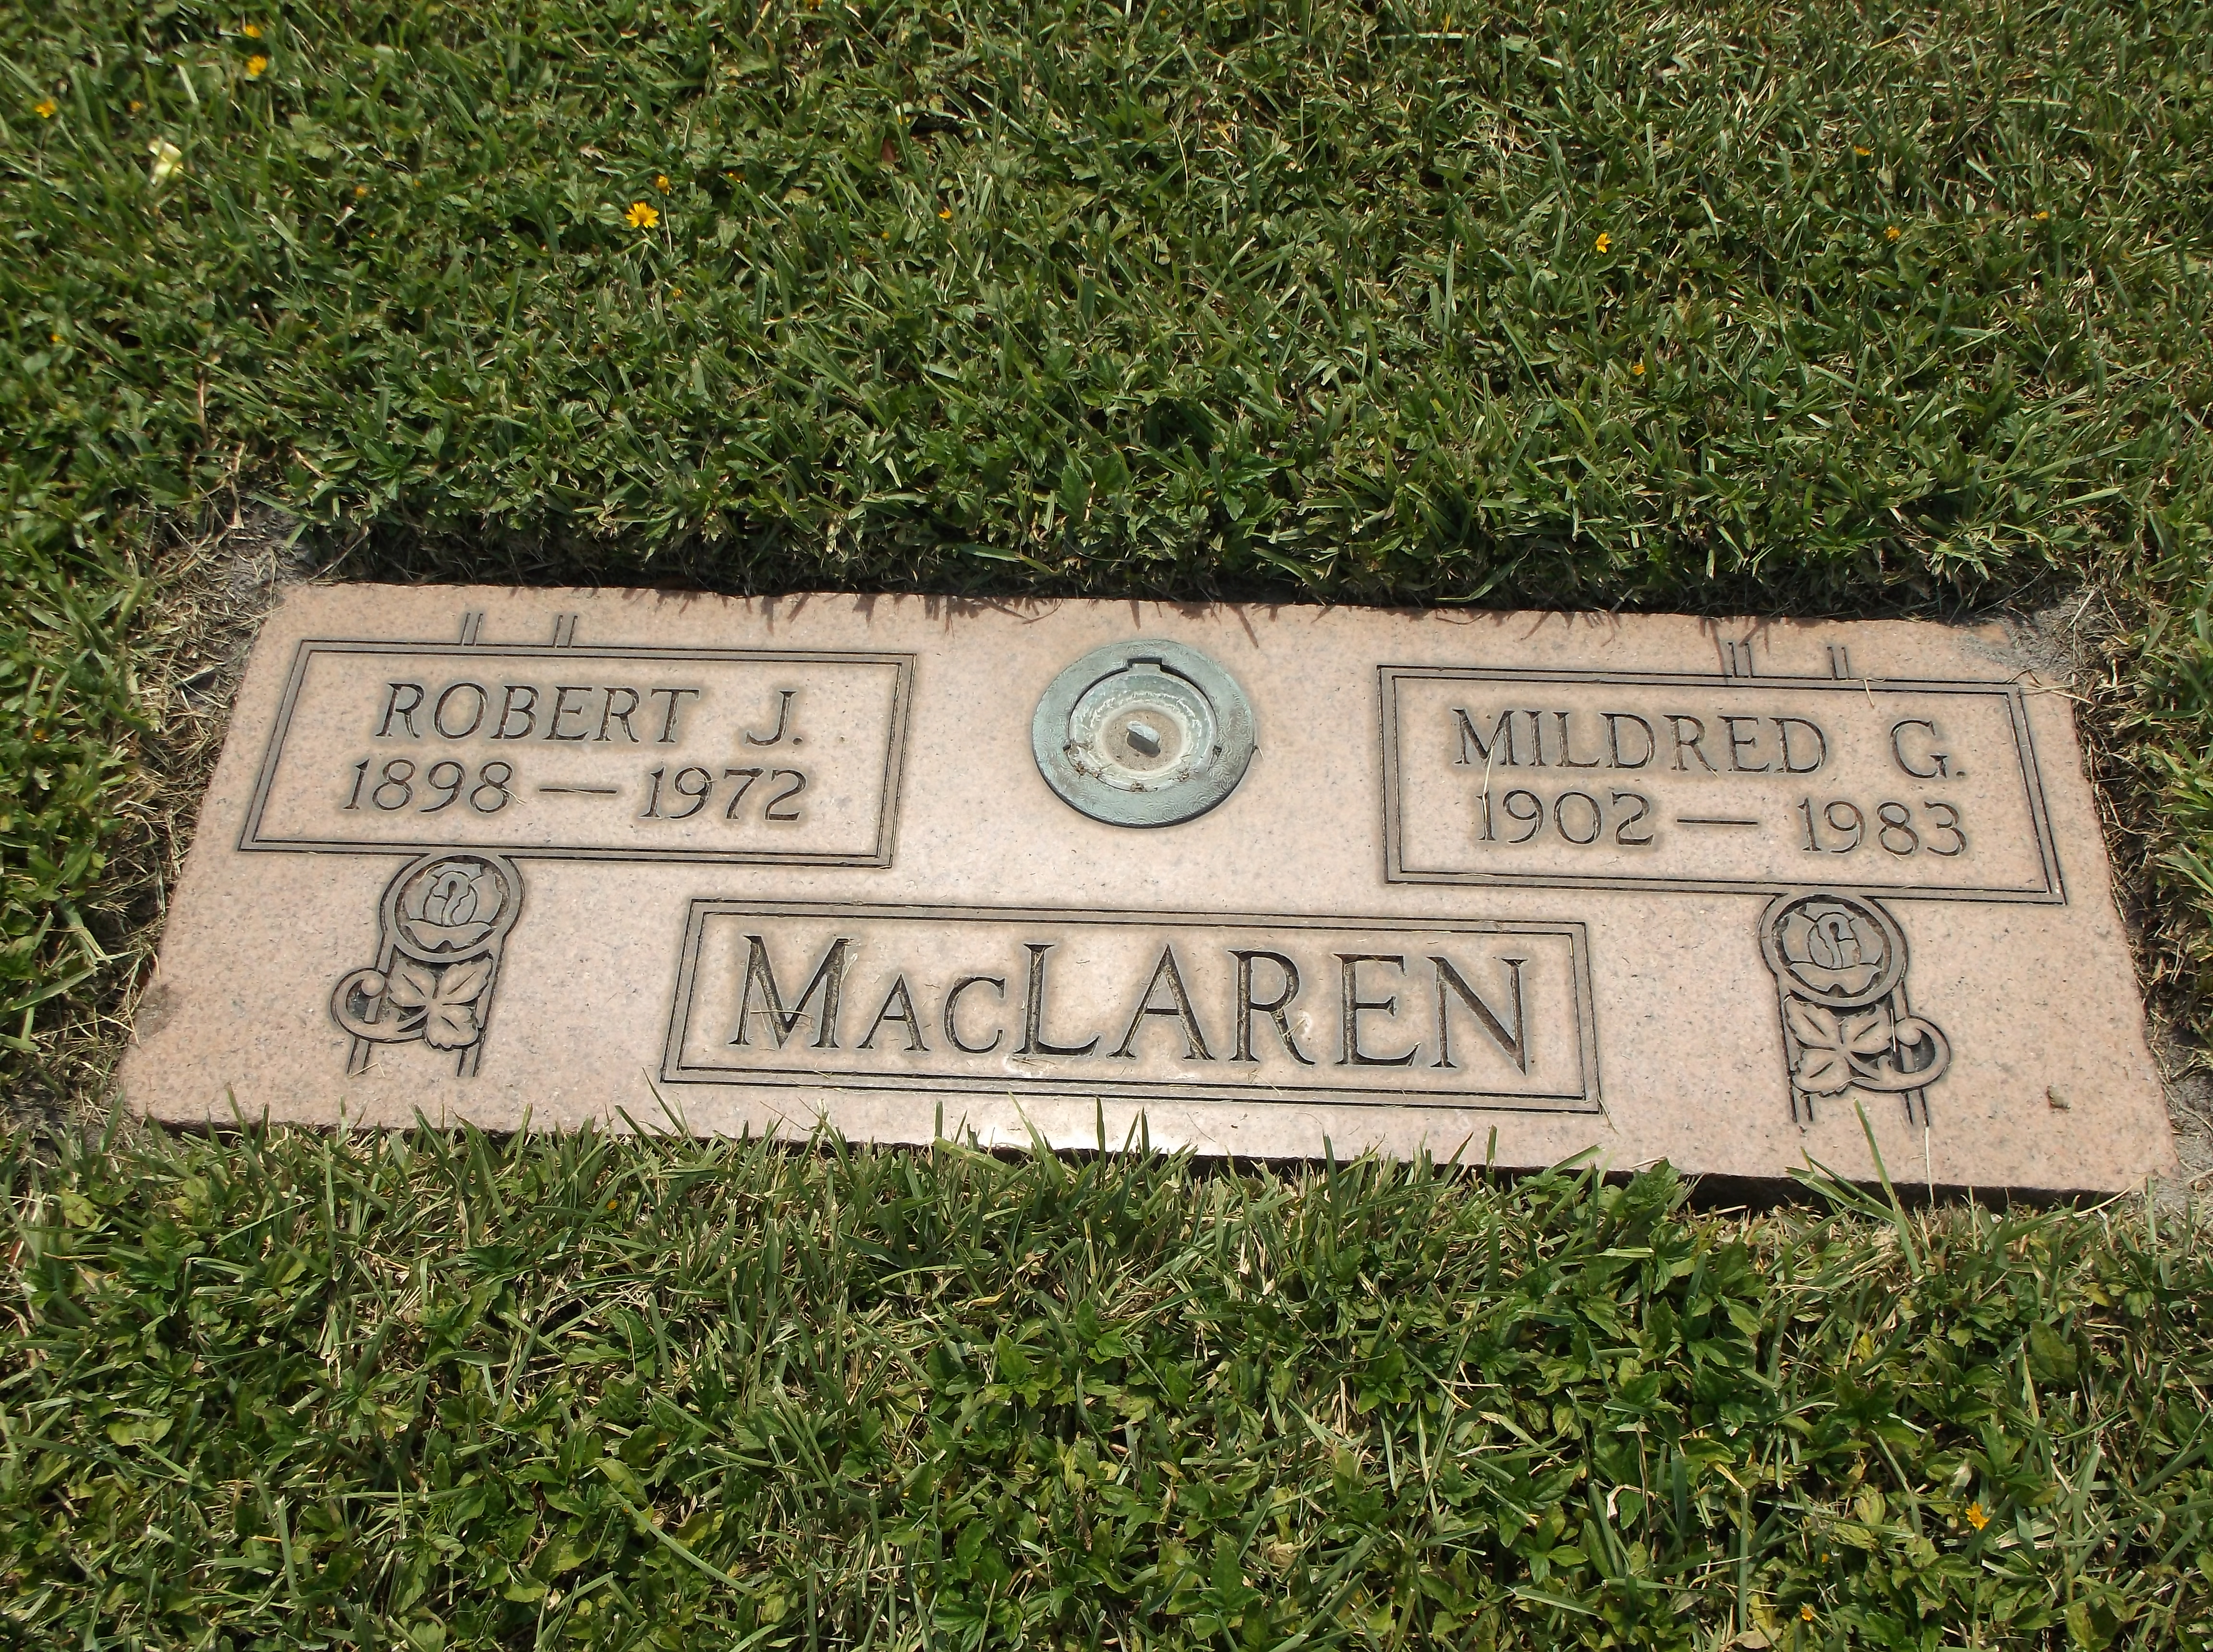 Robert J MacLaren